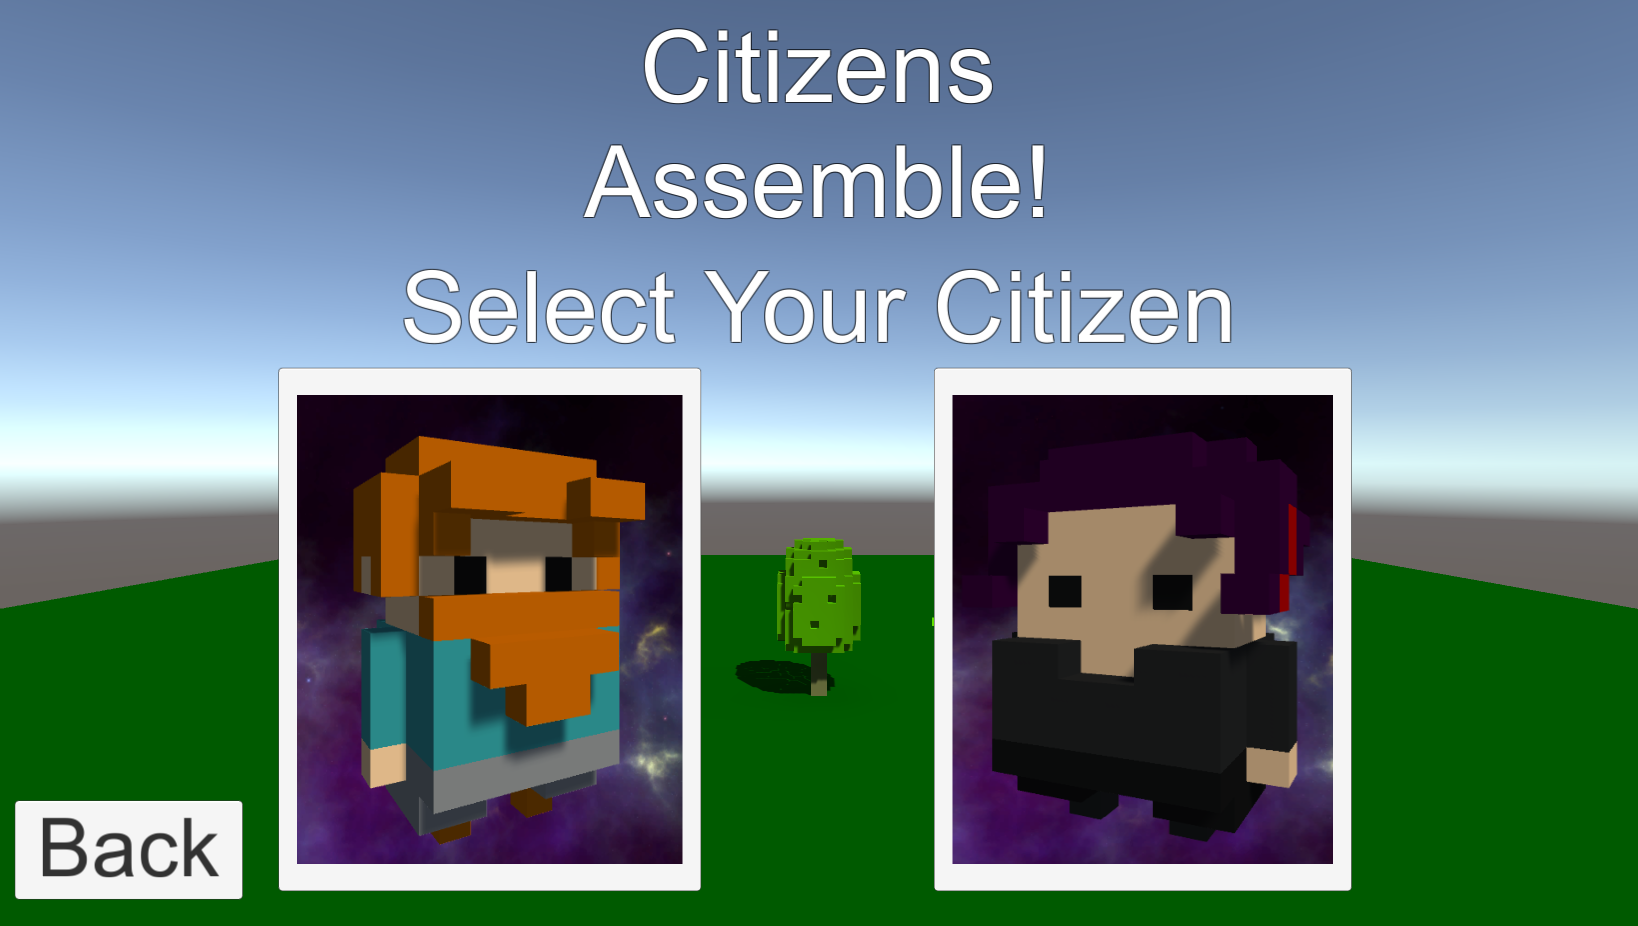 Citizens Assemble!